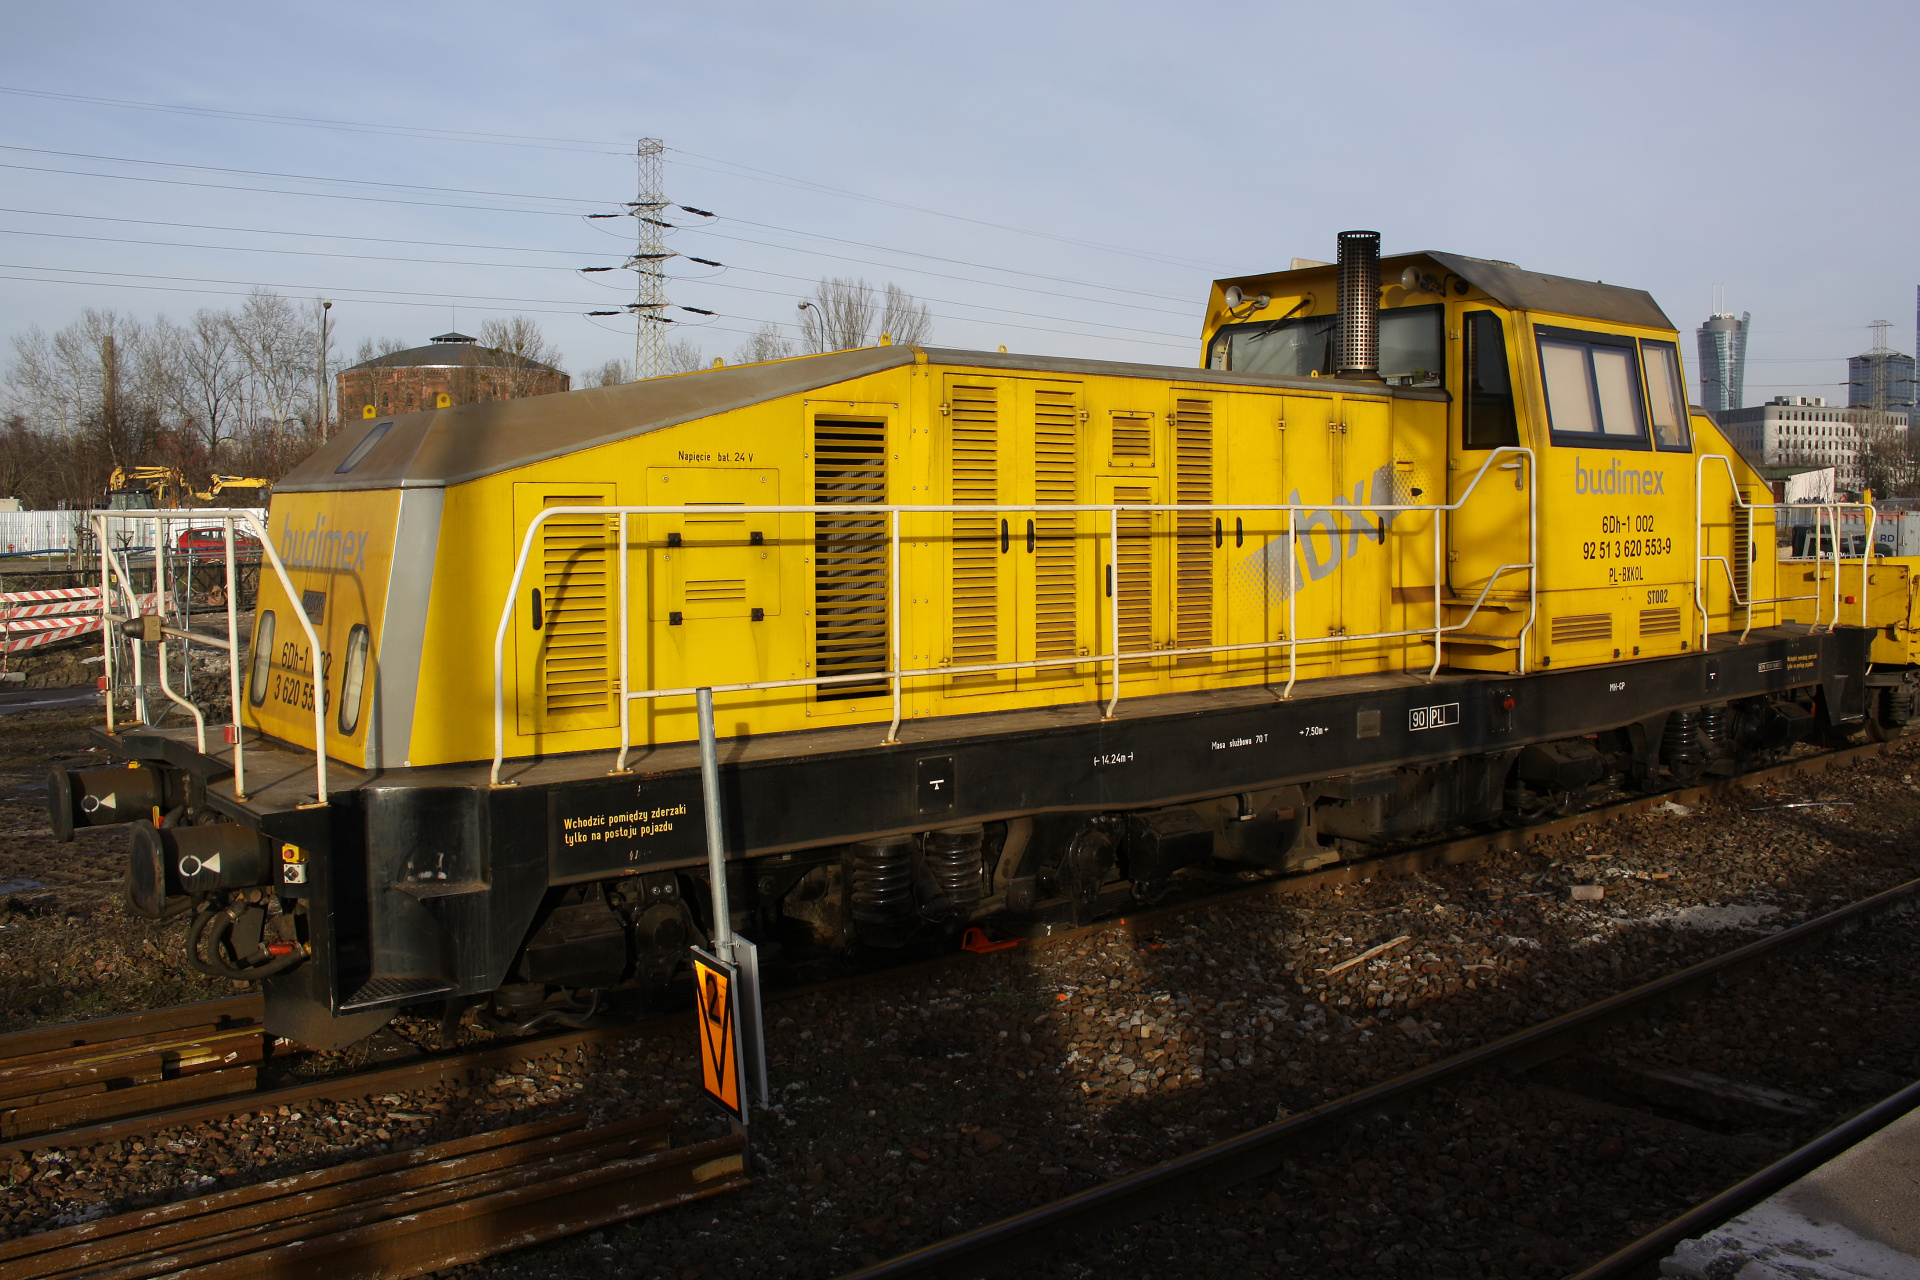 ZPNTMiU "Tabor" 6Dh-1 002 "Alf" (Pojazdy » Pociągi i lokomotywy)